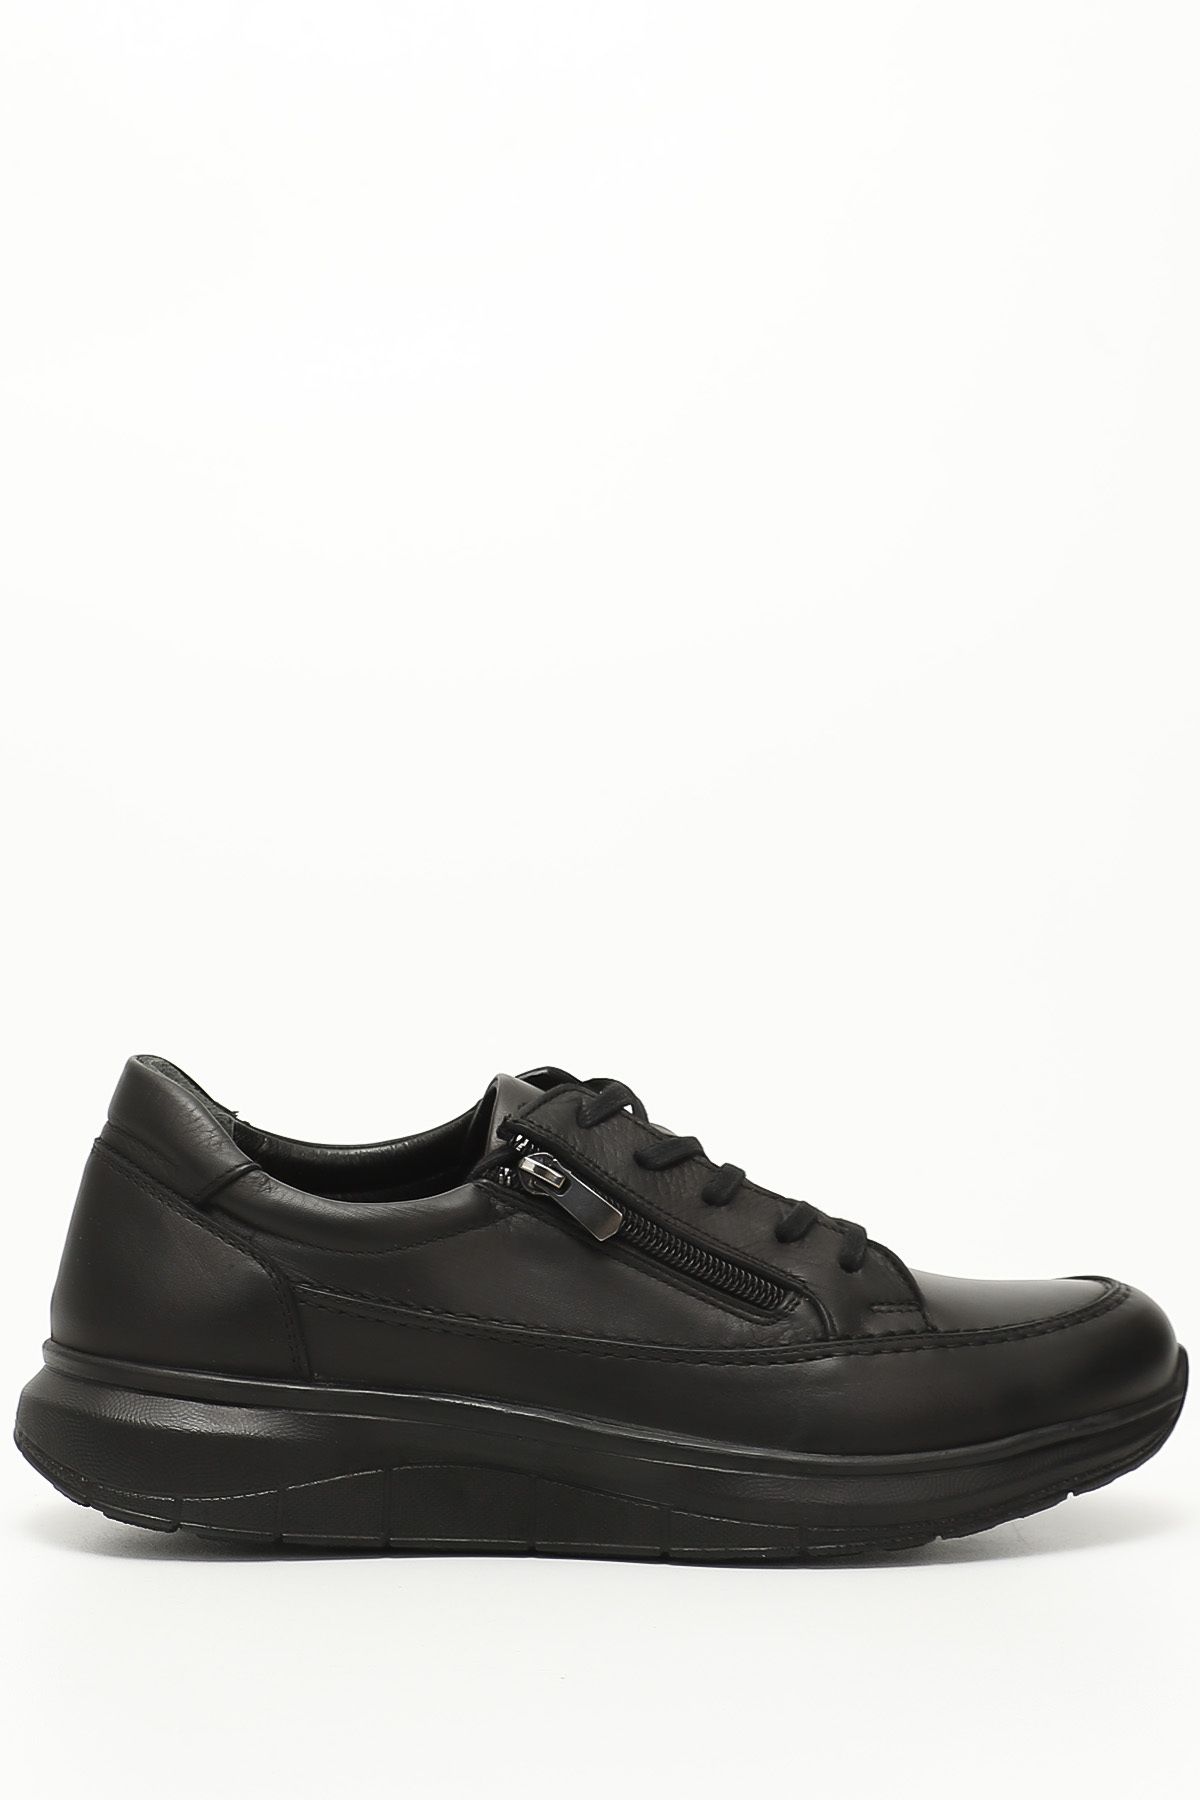 GÖNDERİ(R) Siyah Gön Hakiki Deri Yuvarlak Burun Günlük Bağcıklı Erkek Sneaker 42660